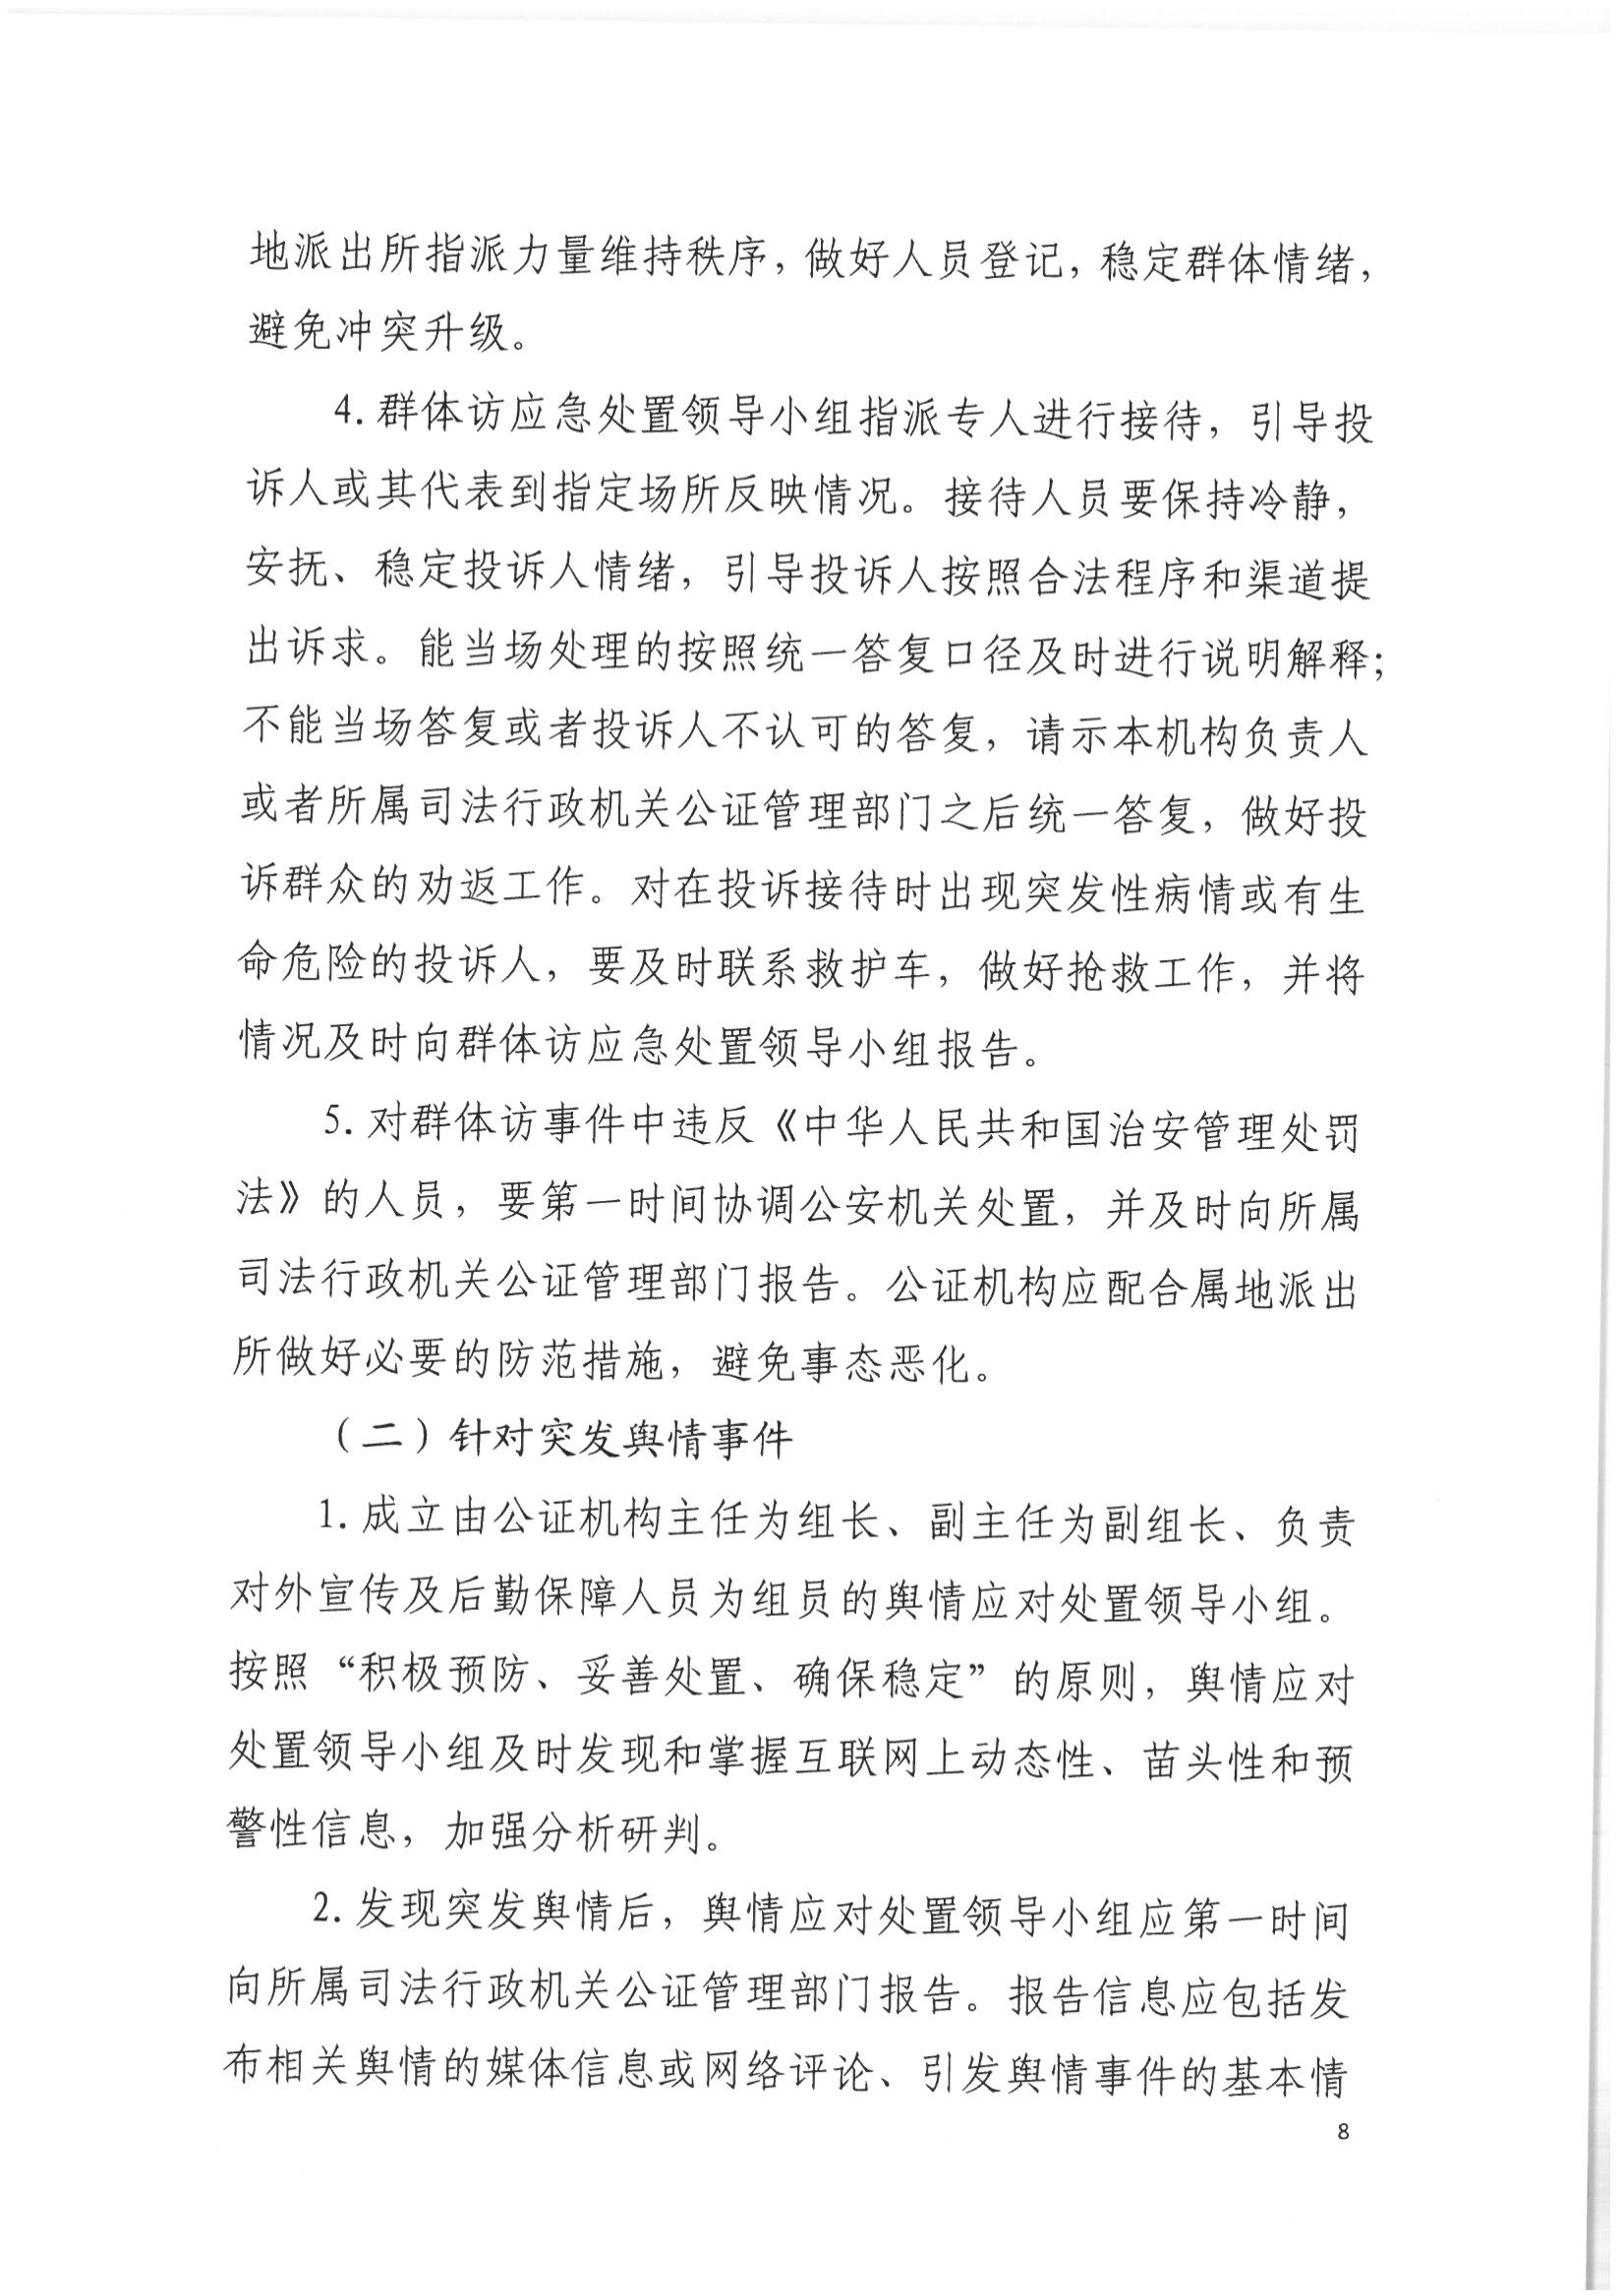 2北京市公证协会关于印发《北京市公证协会关于办理重大、敏感、涉众公证业务的工作指引》的通知(1)_07